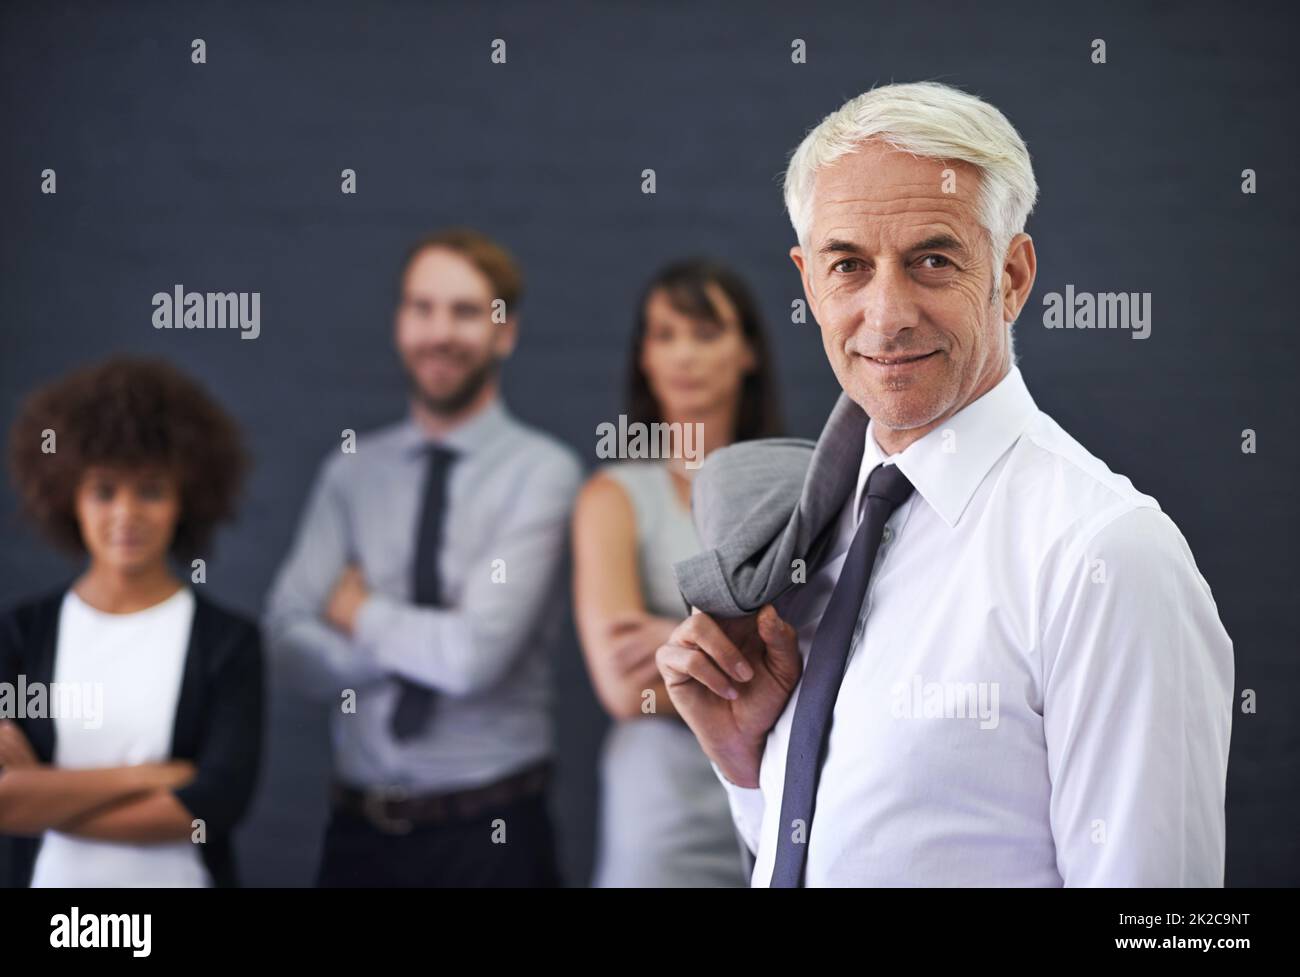 J'apporte des années d'expérience à mon équipe. Photo d'un homme professionnel mûr debout devant un groupe de collègues. Banque D'Images